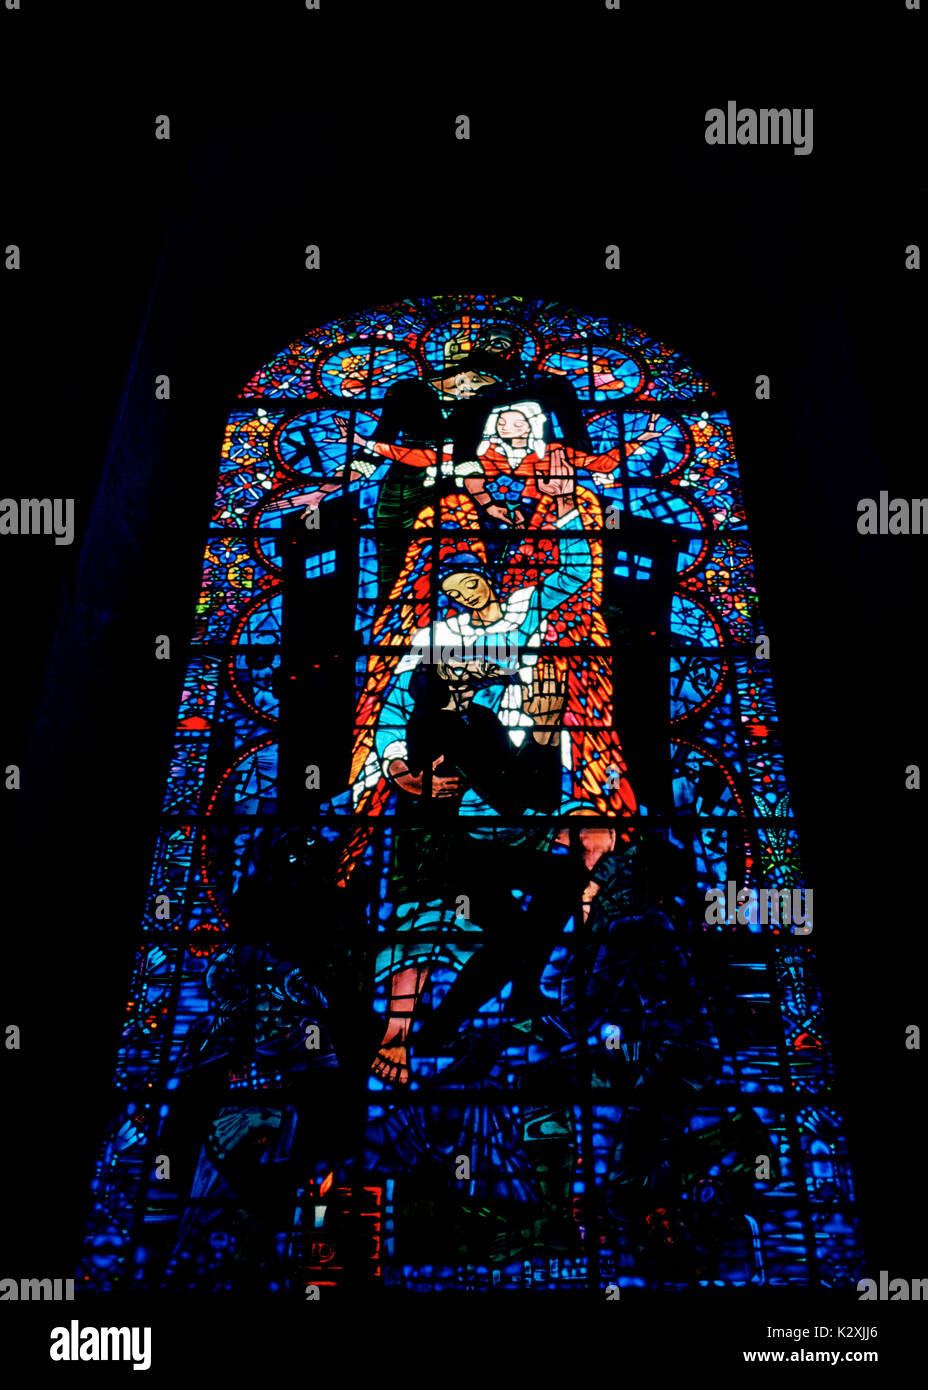 Finestra di salvezza da bossanyi nella cattedrale di Canterbury nella città di Canterbury nel Kent in Inghilterra in Gran Bretagna nel Regno Unito. il vetro macchiato Foto Stock